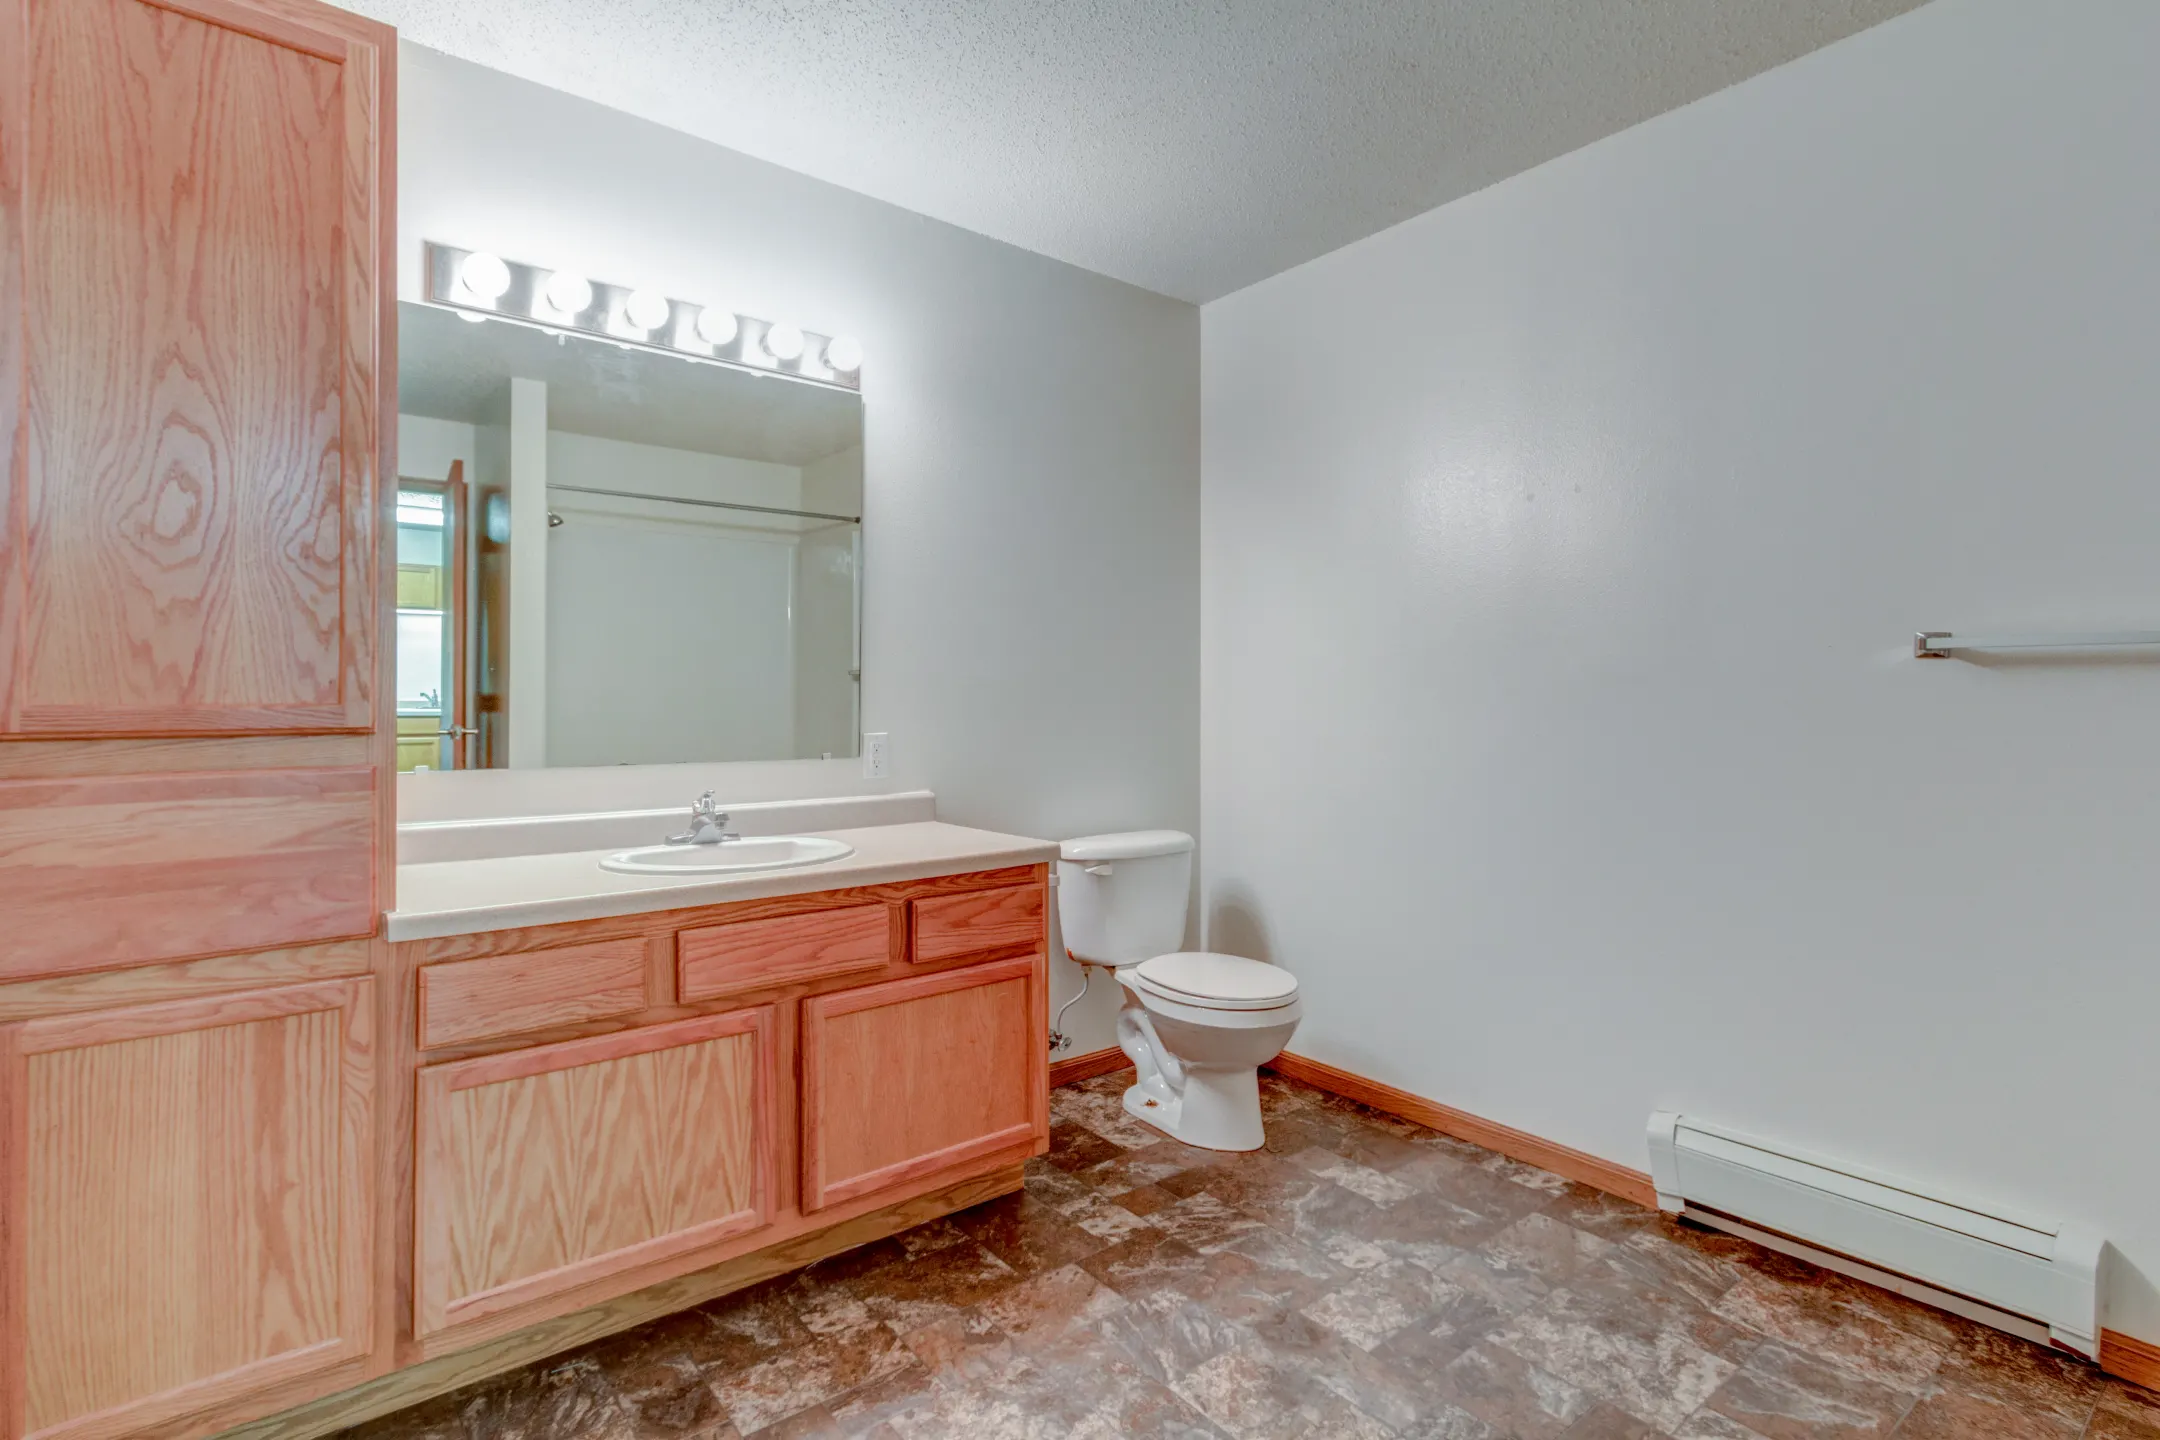 Bathroom - Central Park Apartments - Fargo, ND